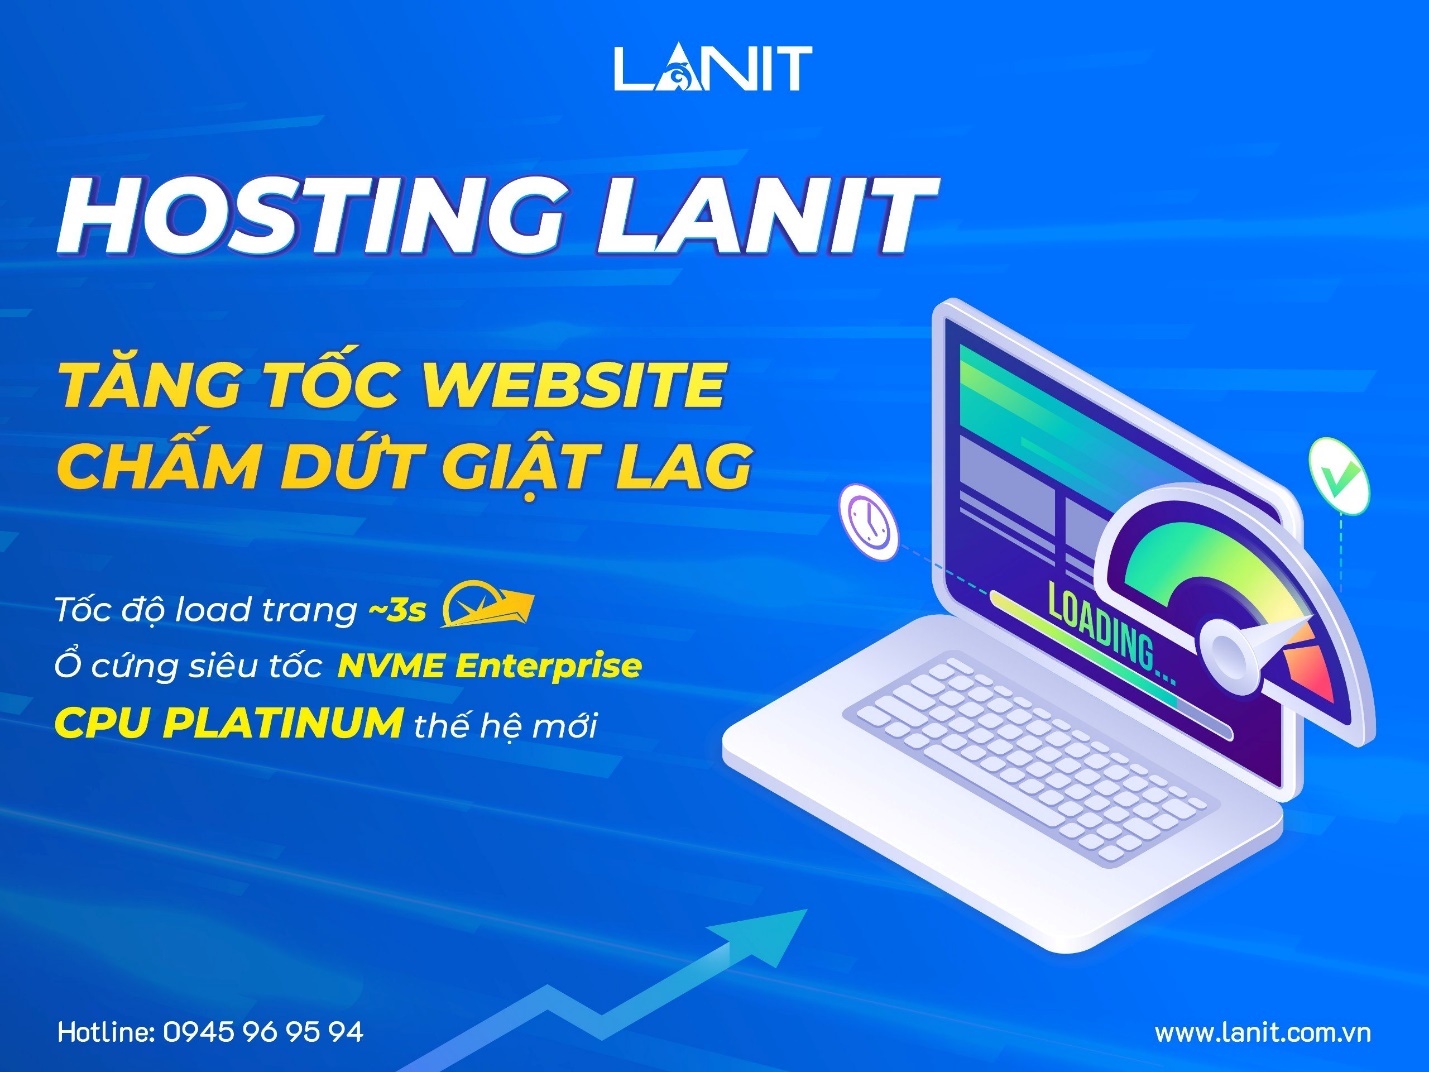 Hosting LANIT - Chìa khóa tăng tốc website, chấm dứt lag giật - Ảnh 1.